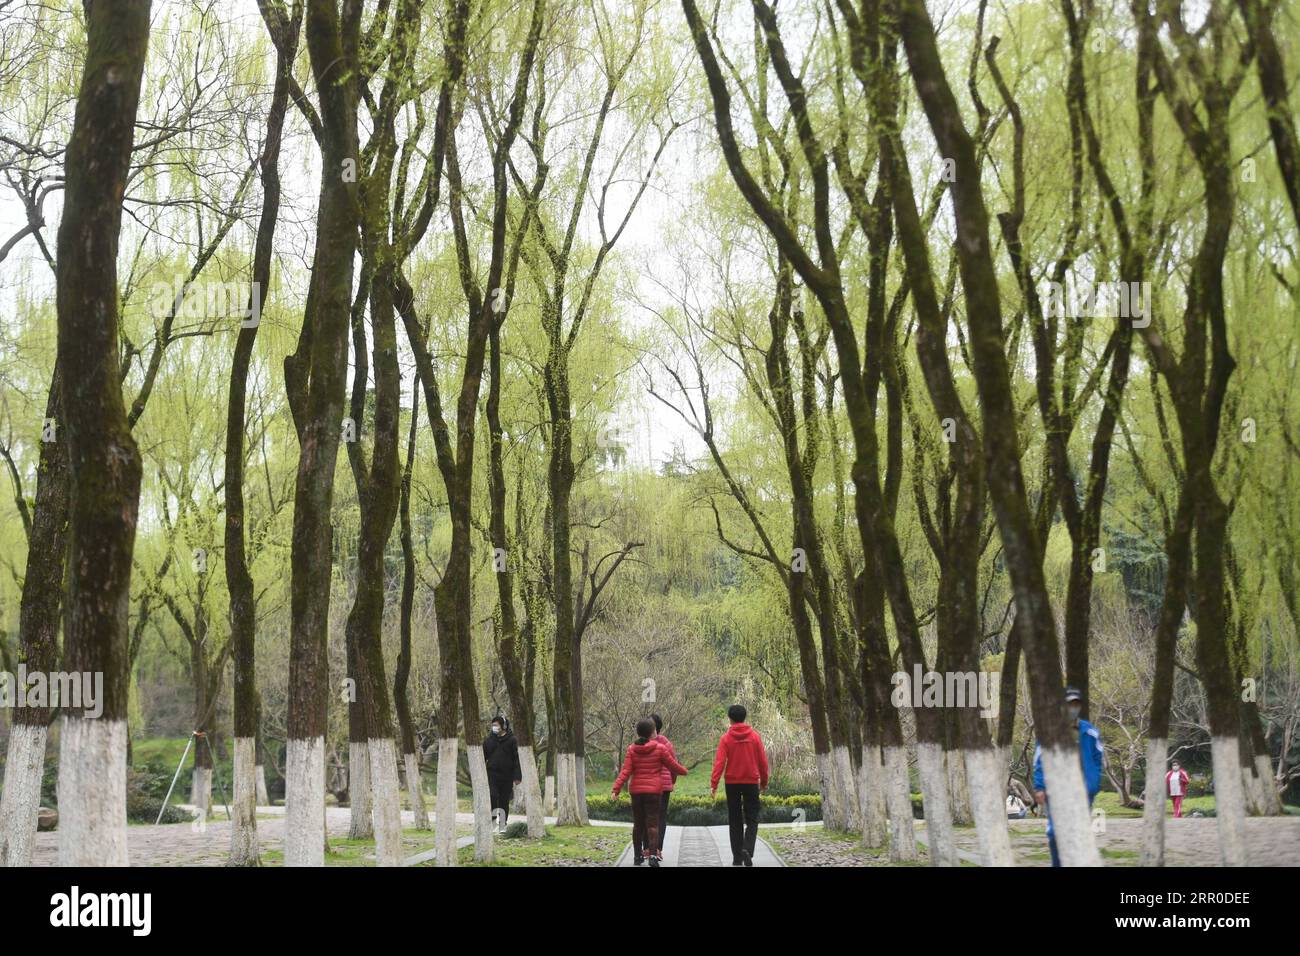 200810 -- HANGZHOU, 10. August 2020 -- Touristen besuchen einen Park am West Lake Scenic Area in Hangzhou, Hauptstadt der ostchinesischen Provinz Zhejiang, 12. März 2020. Die Kulturlandschaft des West Lake in Hangzhou, umrahmt von wolkenbedeckten Hügeln auf drei Seiten und aufgeteilt in mehrere Teile durch malerische Dämme, präsentiert eine zarte Landschaft mit sich überlappenden Gipfeln und verstreuten Tempeln, Pagoden, Pavillons, Gärten, Zierbäumen, und künstliche Inseln, die der Stadt Hangzhou Schönheit verleihen. Es wurde vom Weltkulturerbe-Komitee in die UNESCO-Liste des Weltkulturerbes als kulturelles Eigentum aufgenommen Stockfoto